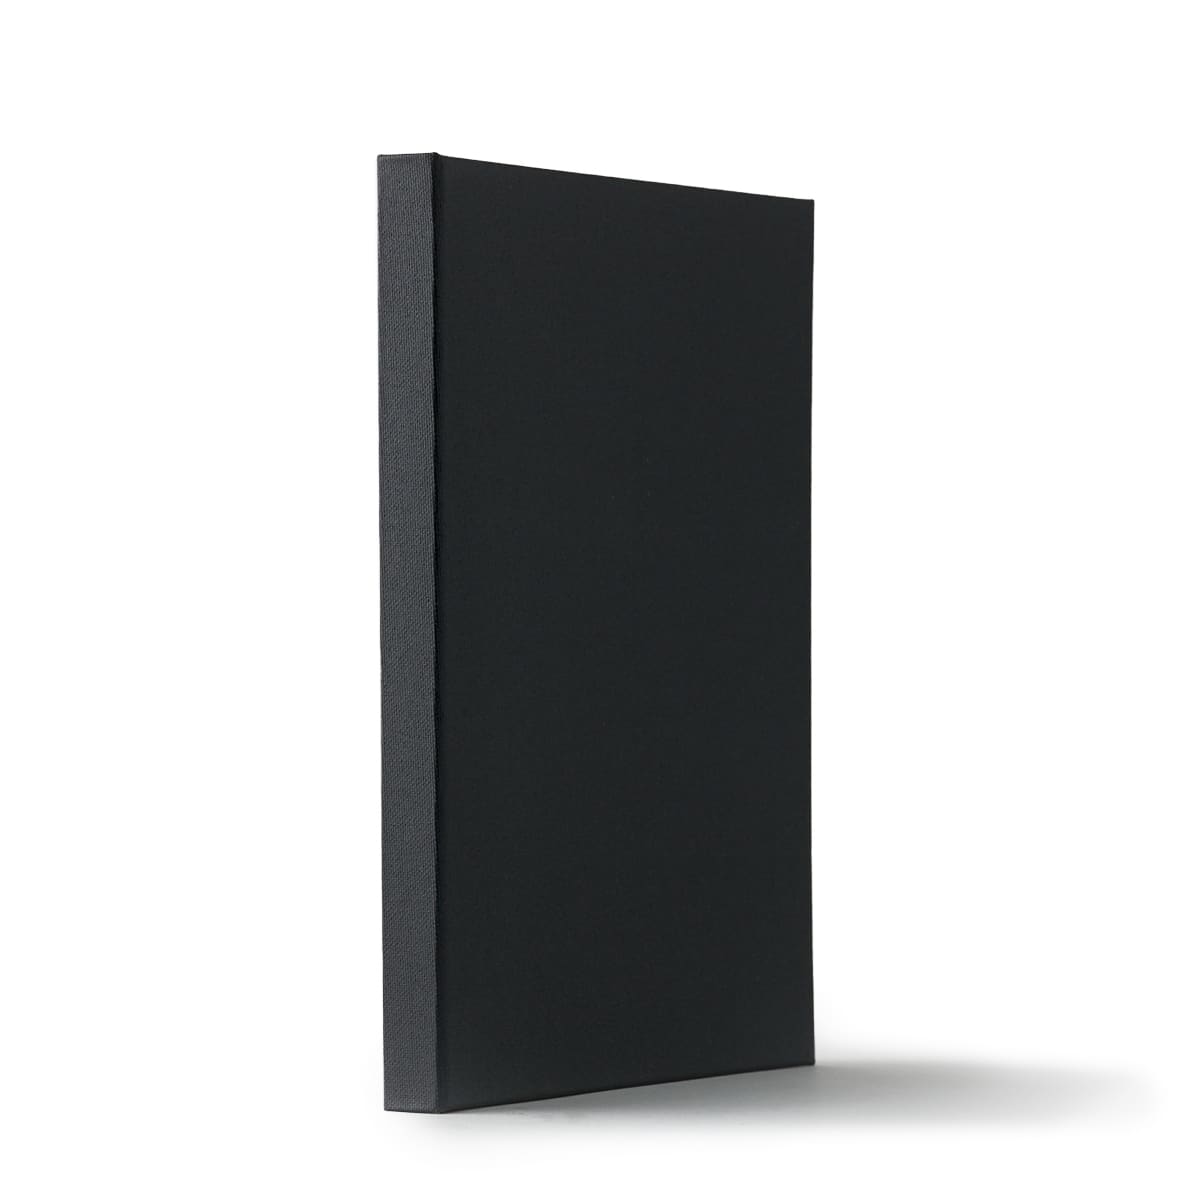 Black Paper Sketchbook: A 8.5 x 11 Blackout Sketchbook For Use